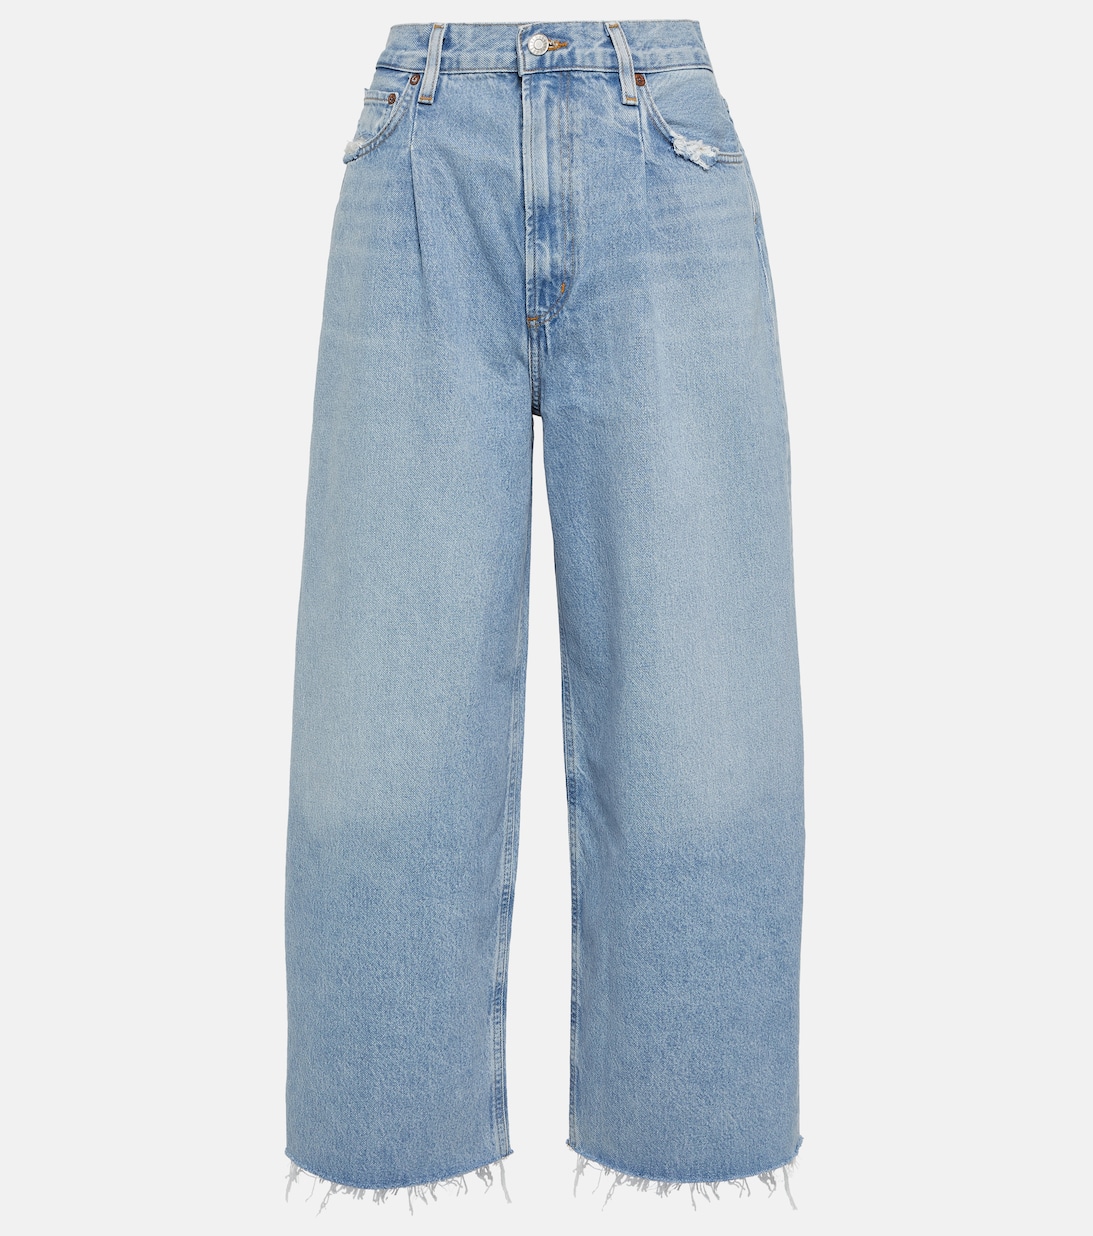 Широкие джинсы Dagna с высокой посадкой AGOLDE, синий широкие джинсы с высокой посадкой nermorosa joe s jeans синий